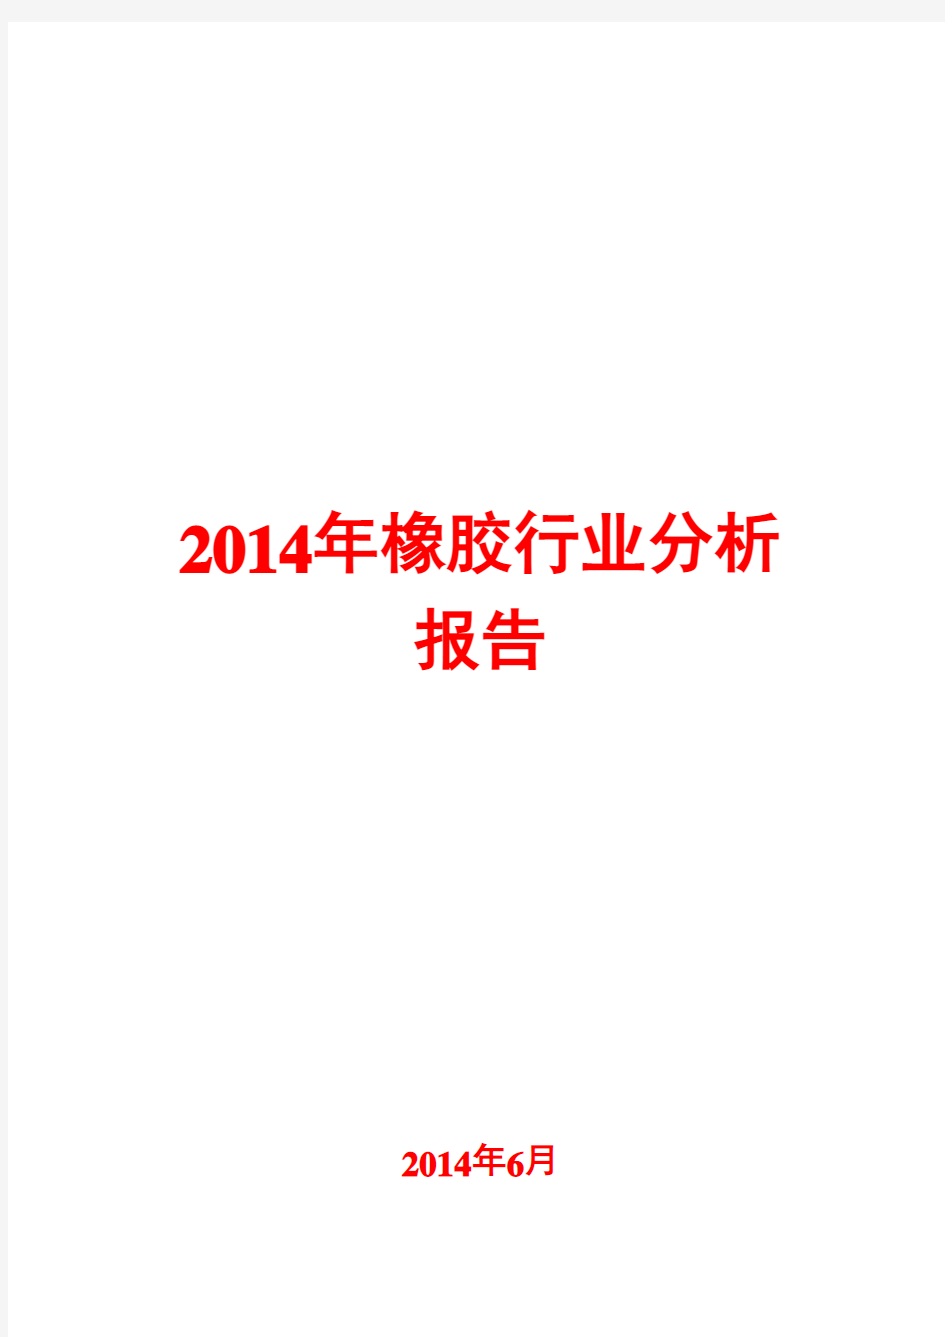 2014年橡胶行业分析报告